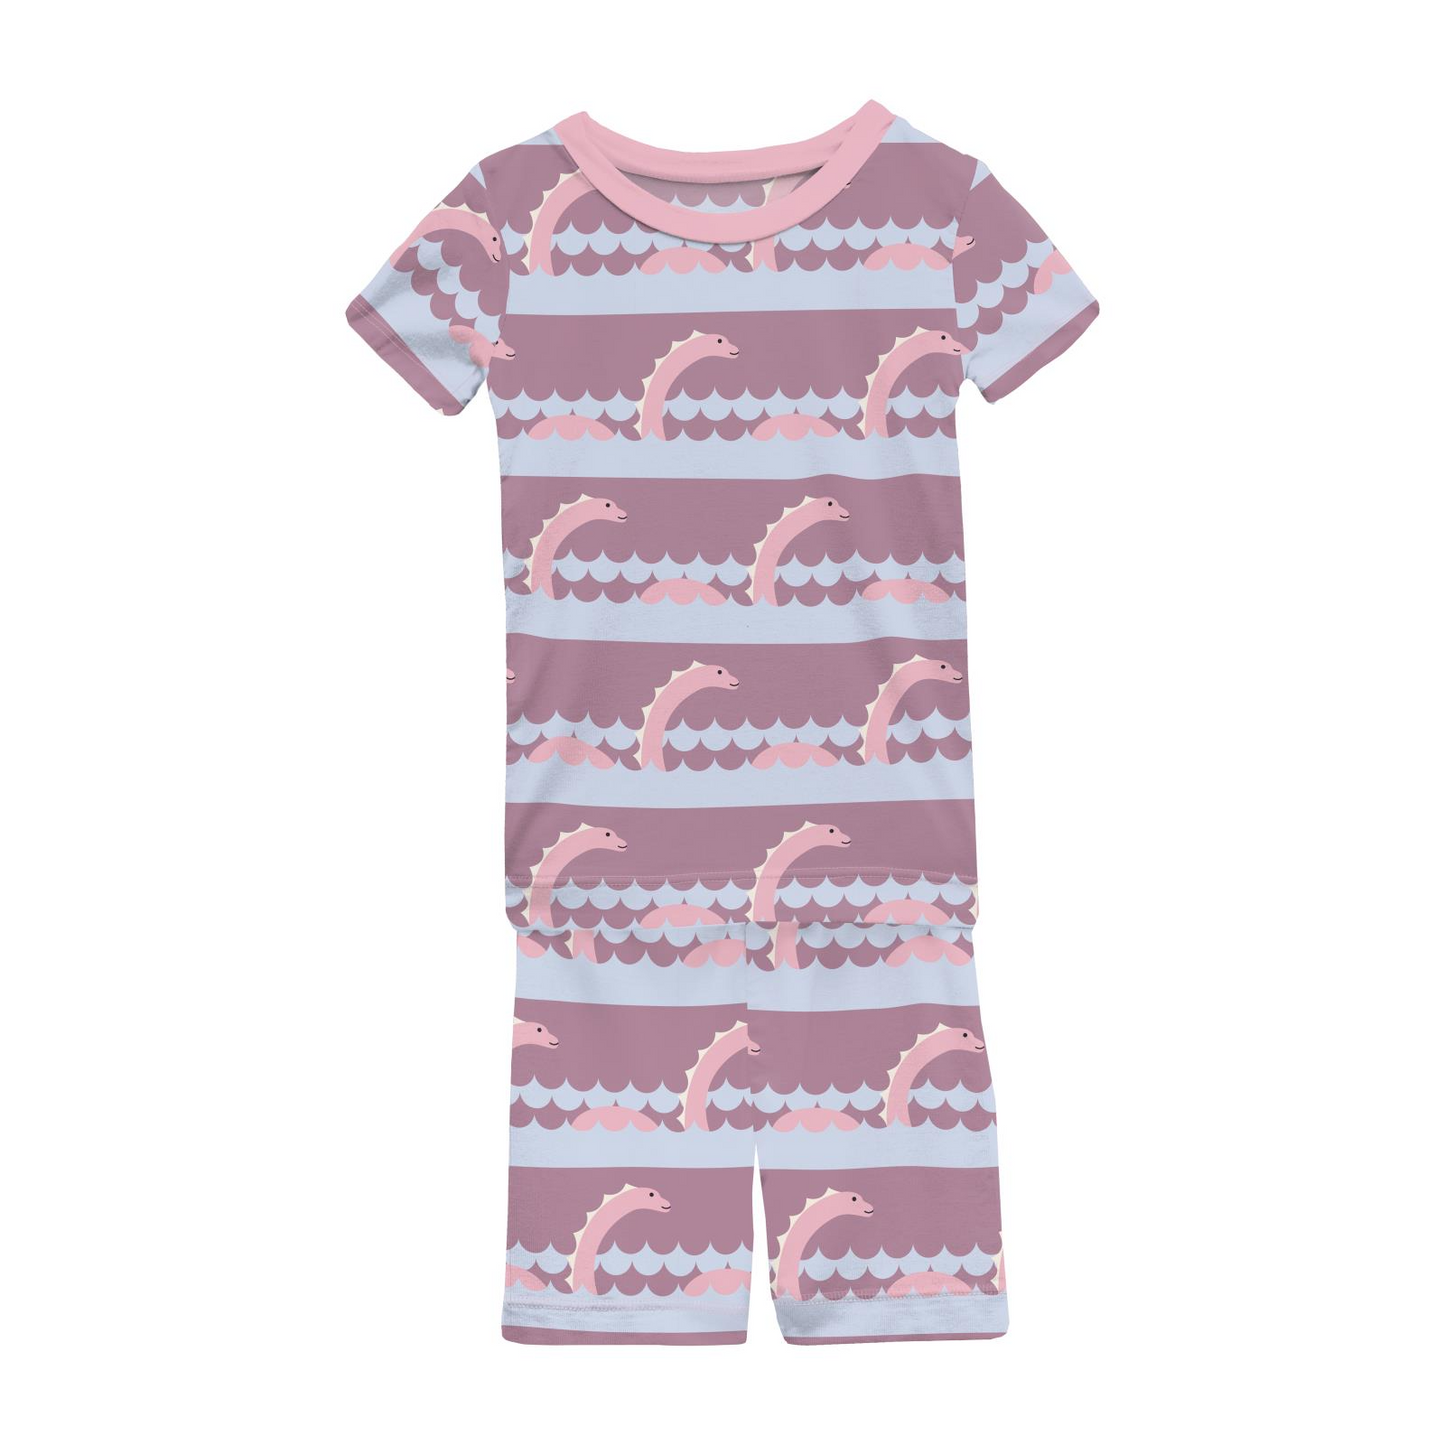 Bamboo Print Short Sleeve Pajama Set with Shorts: Pegasus Sea Monster